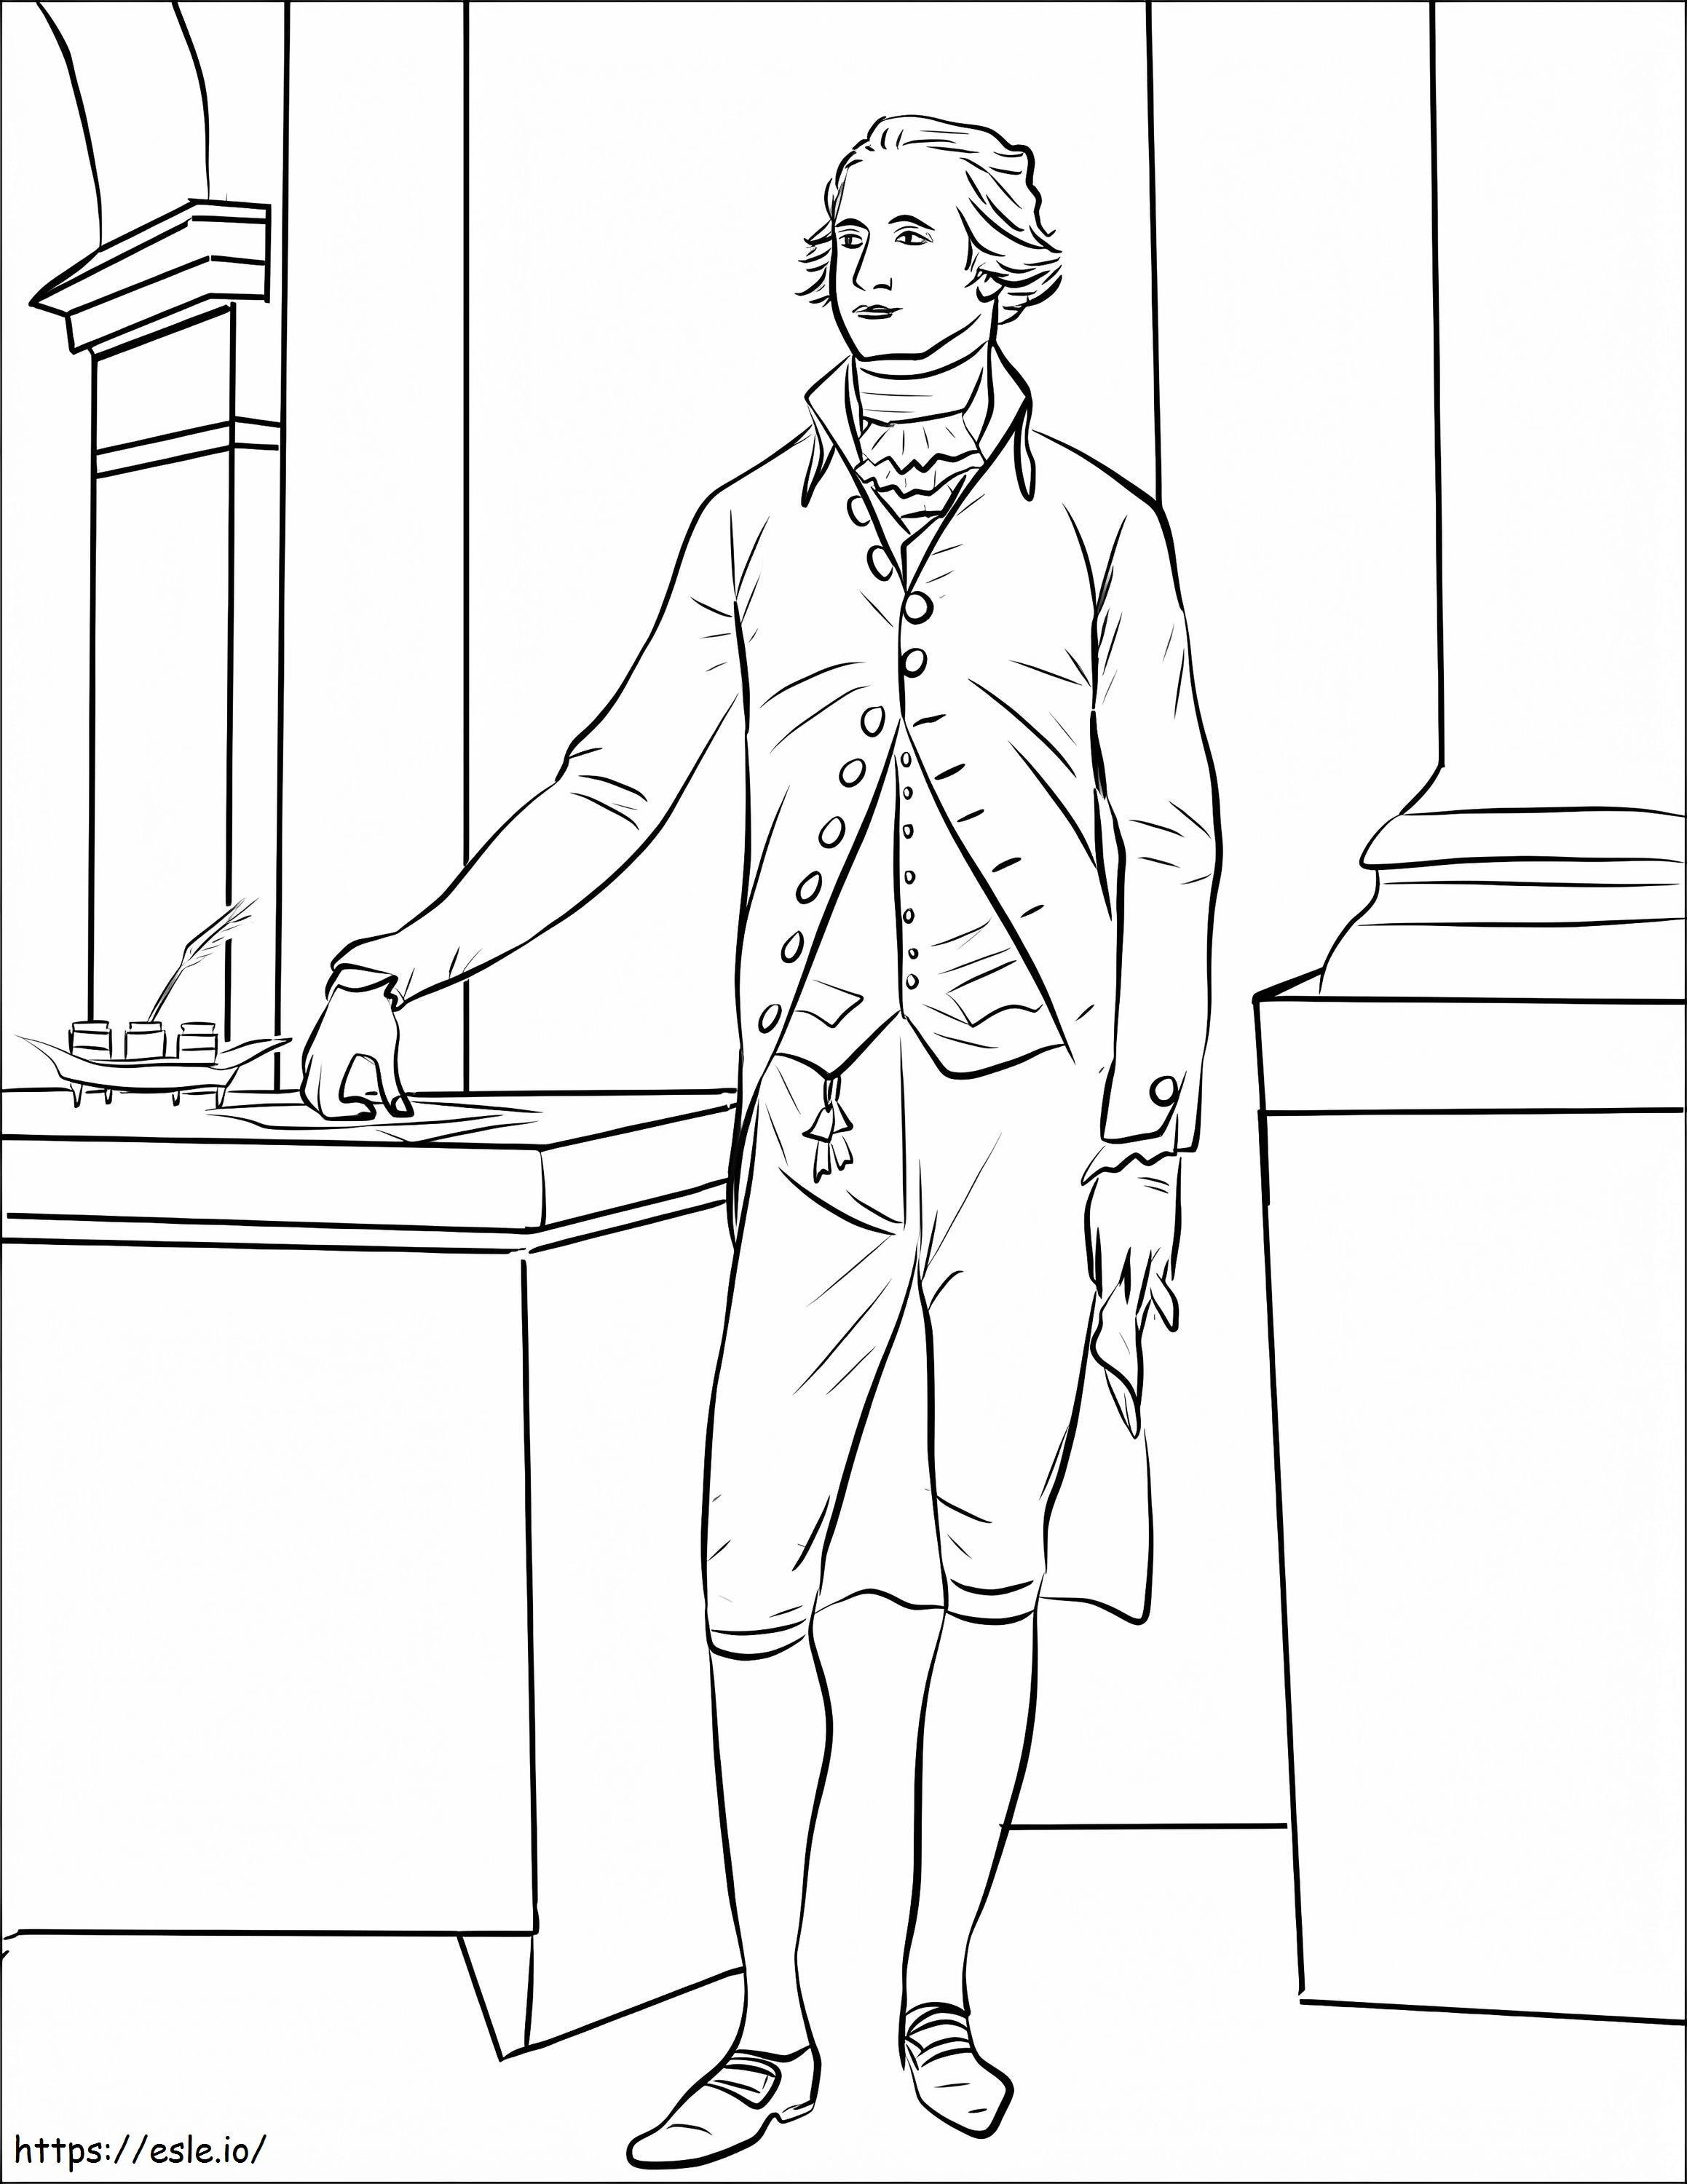 Alexander Hamilton kleurplaat kleurplaat